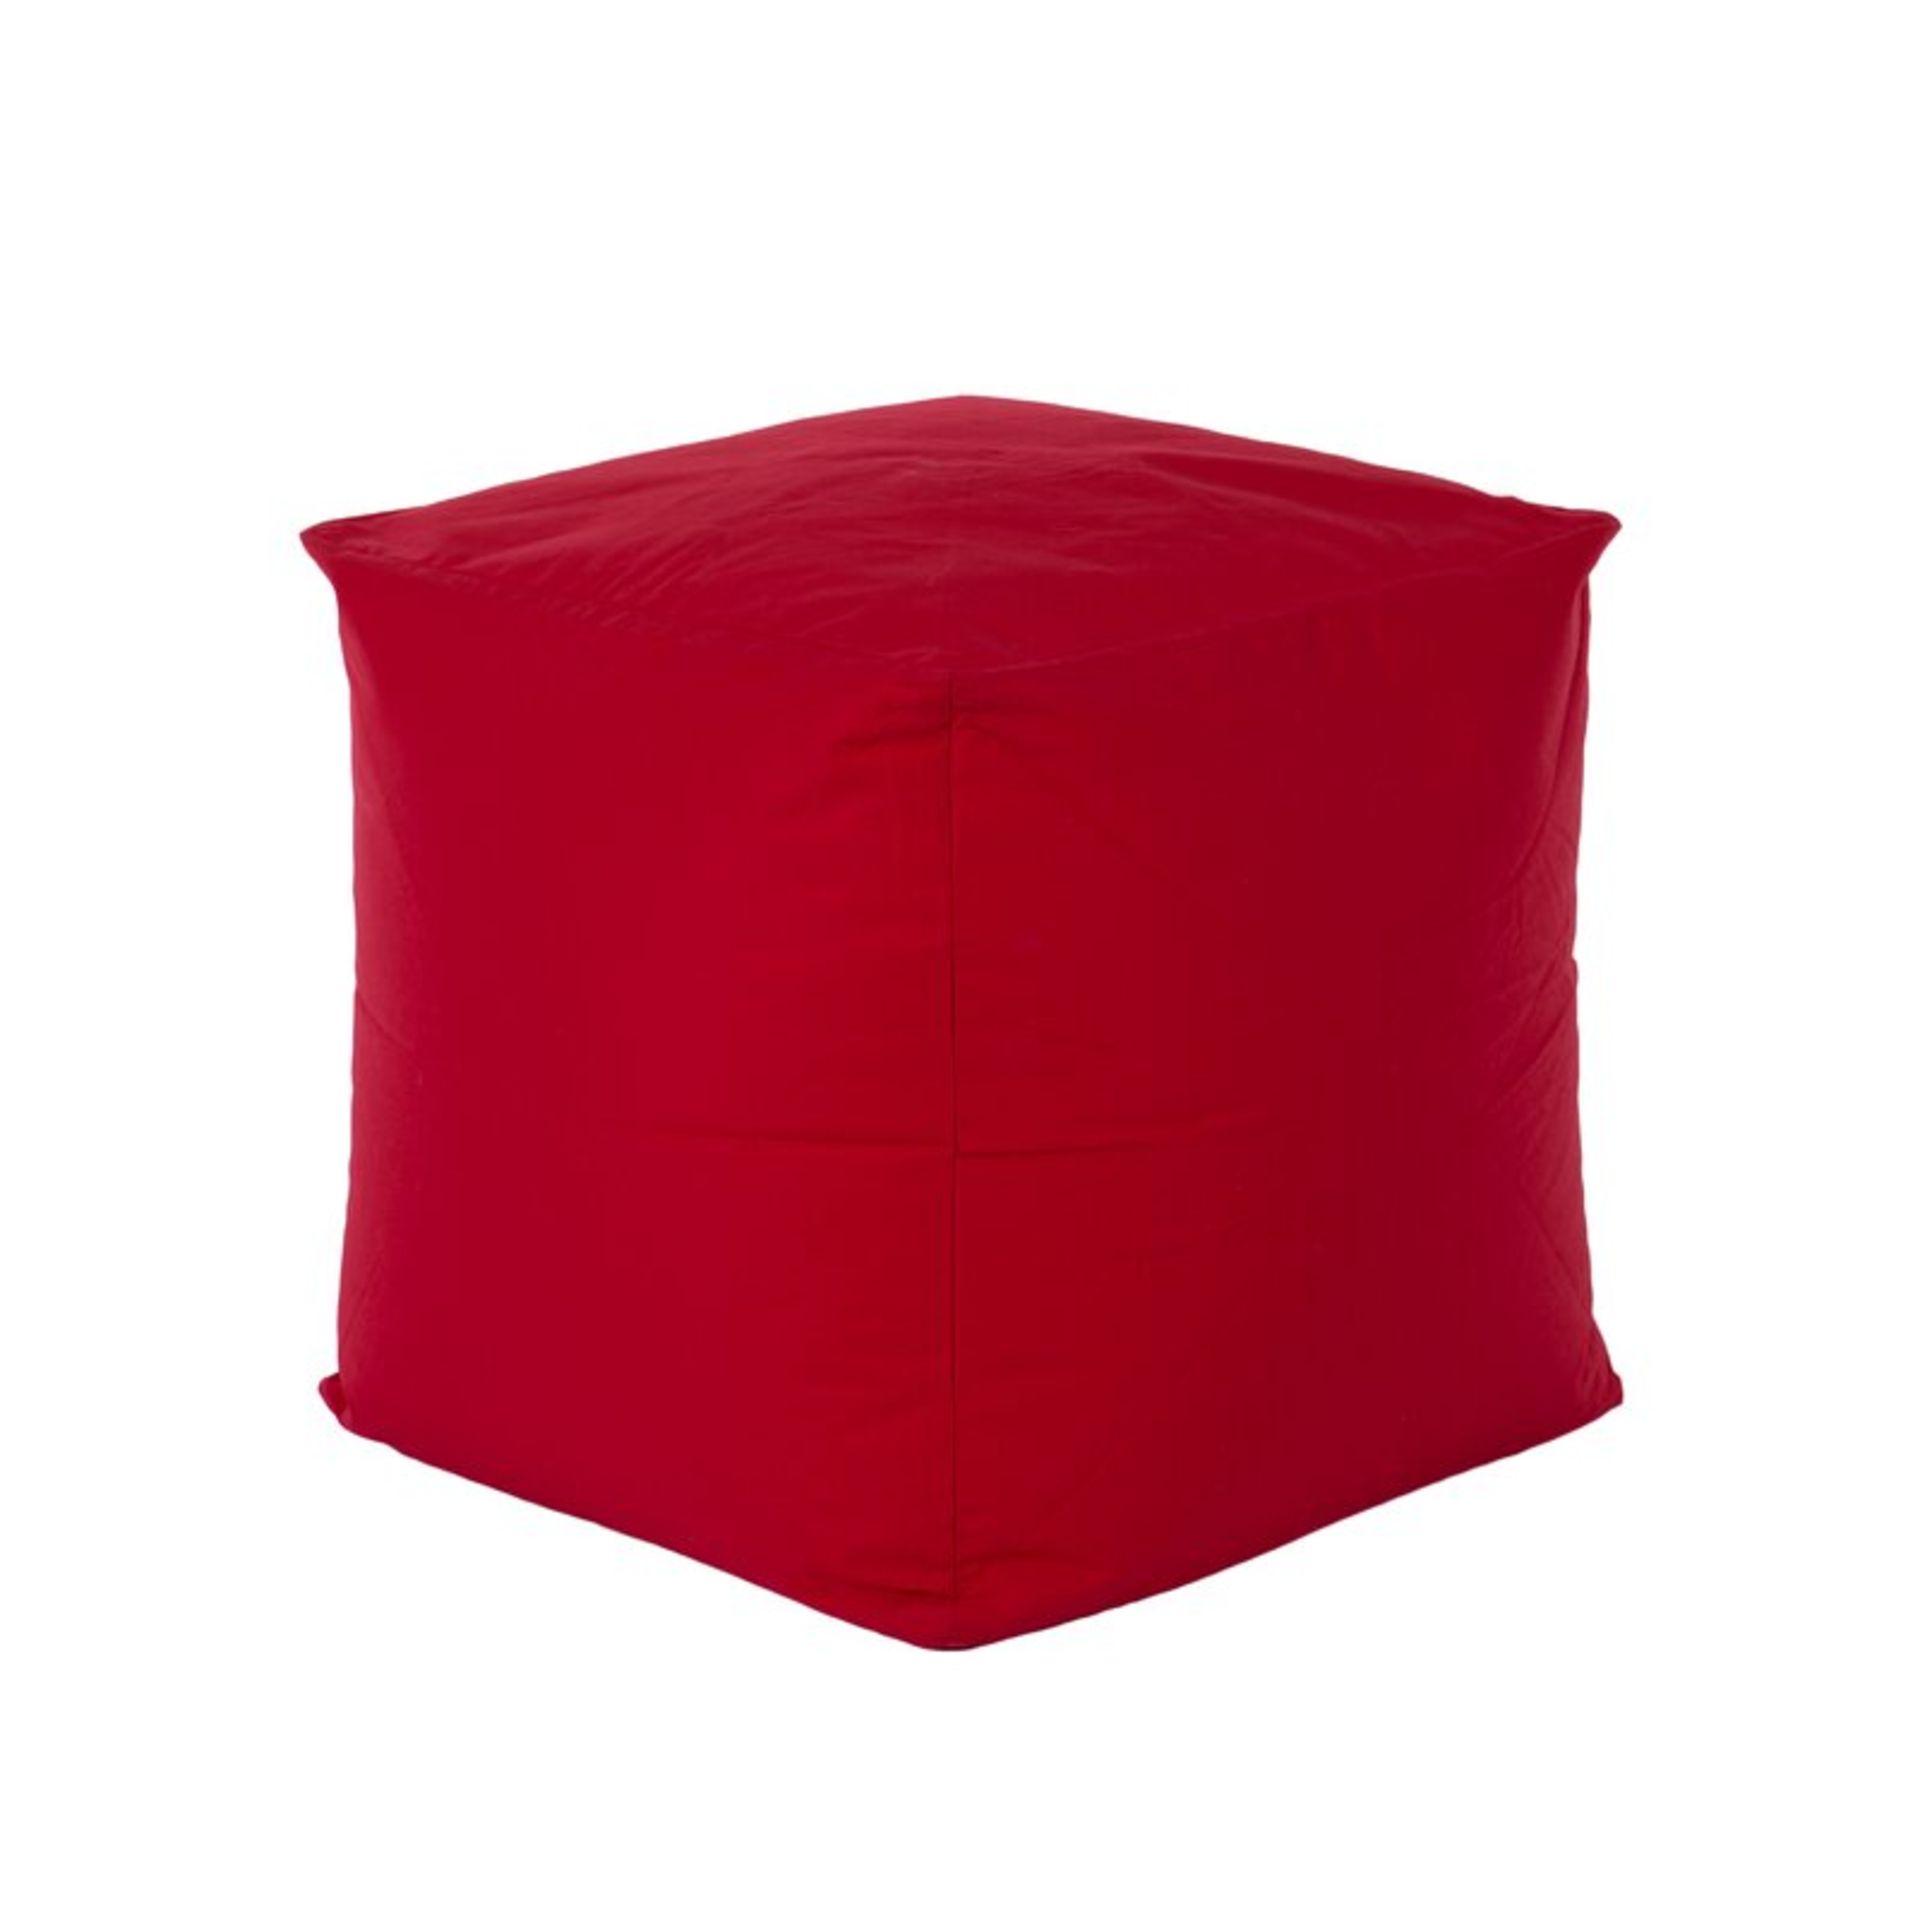 x2 Cube Bean Bag Chair Colour Red - RRP £24.99 Each